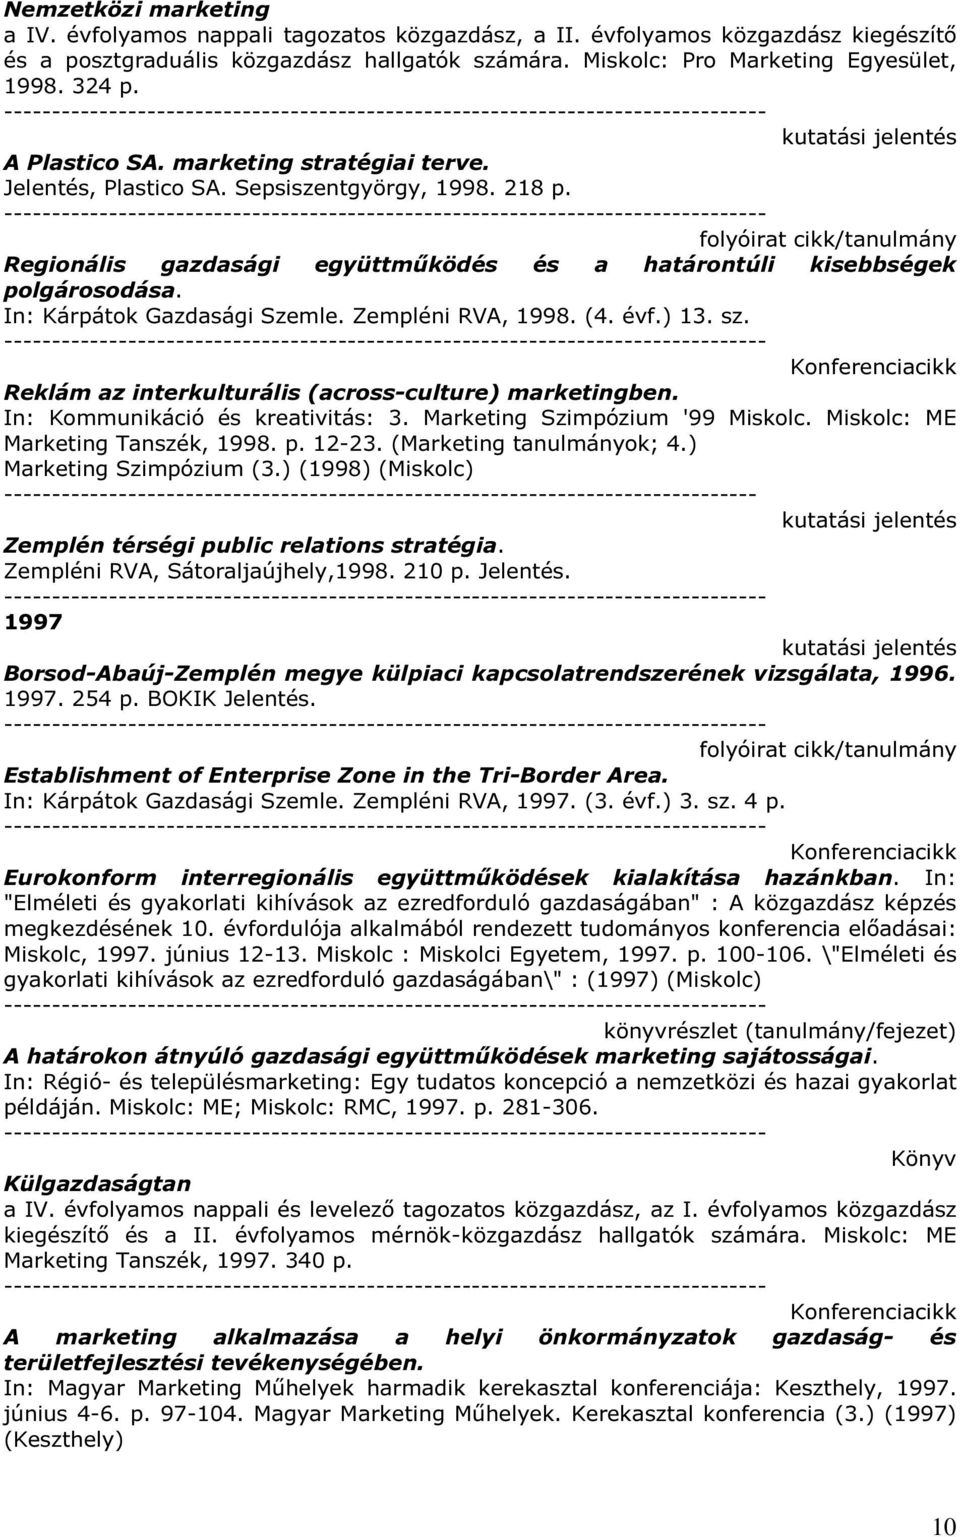 In: Kárpátok Gazdasági Szemle. Zempléni RVA, 1998. (4. évf.) 13. sz. Reklám az interkulturális (across-culture) marketingben. In: Kommunikáció és kreativitás: 3. Marketing Szimpózium '99 Miskolc.